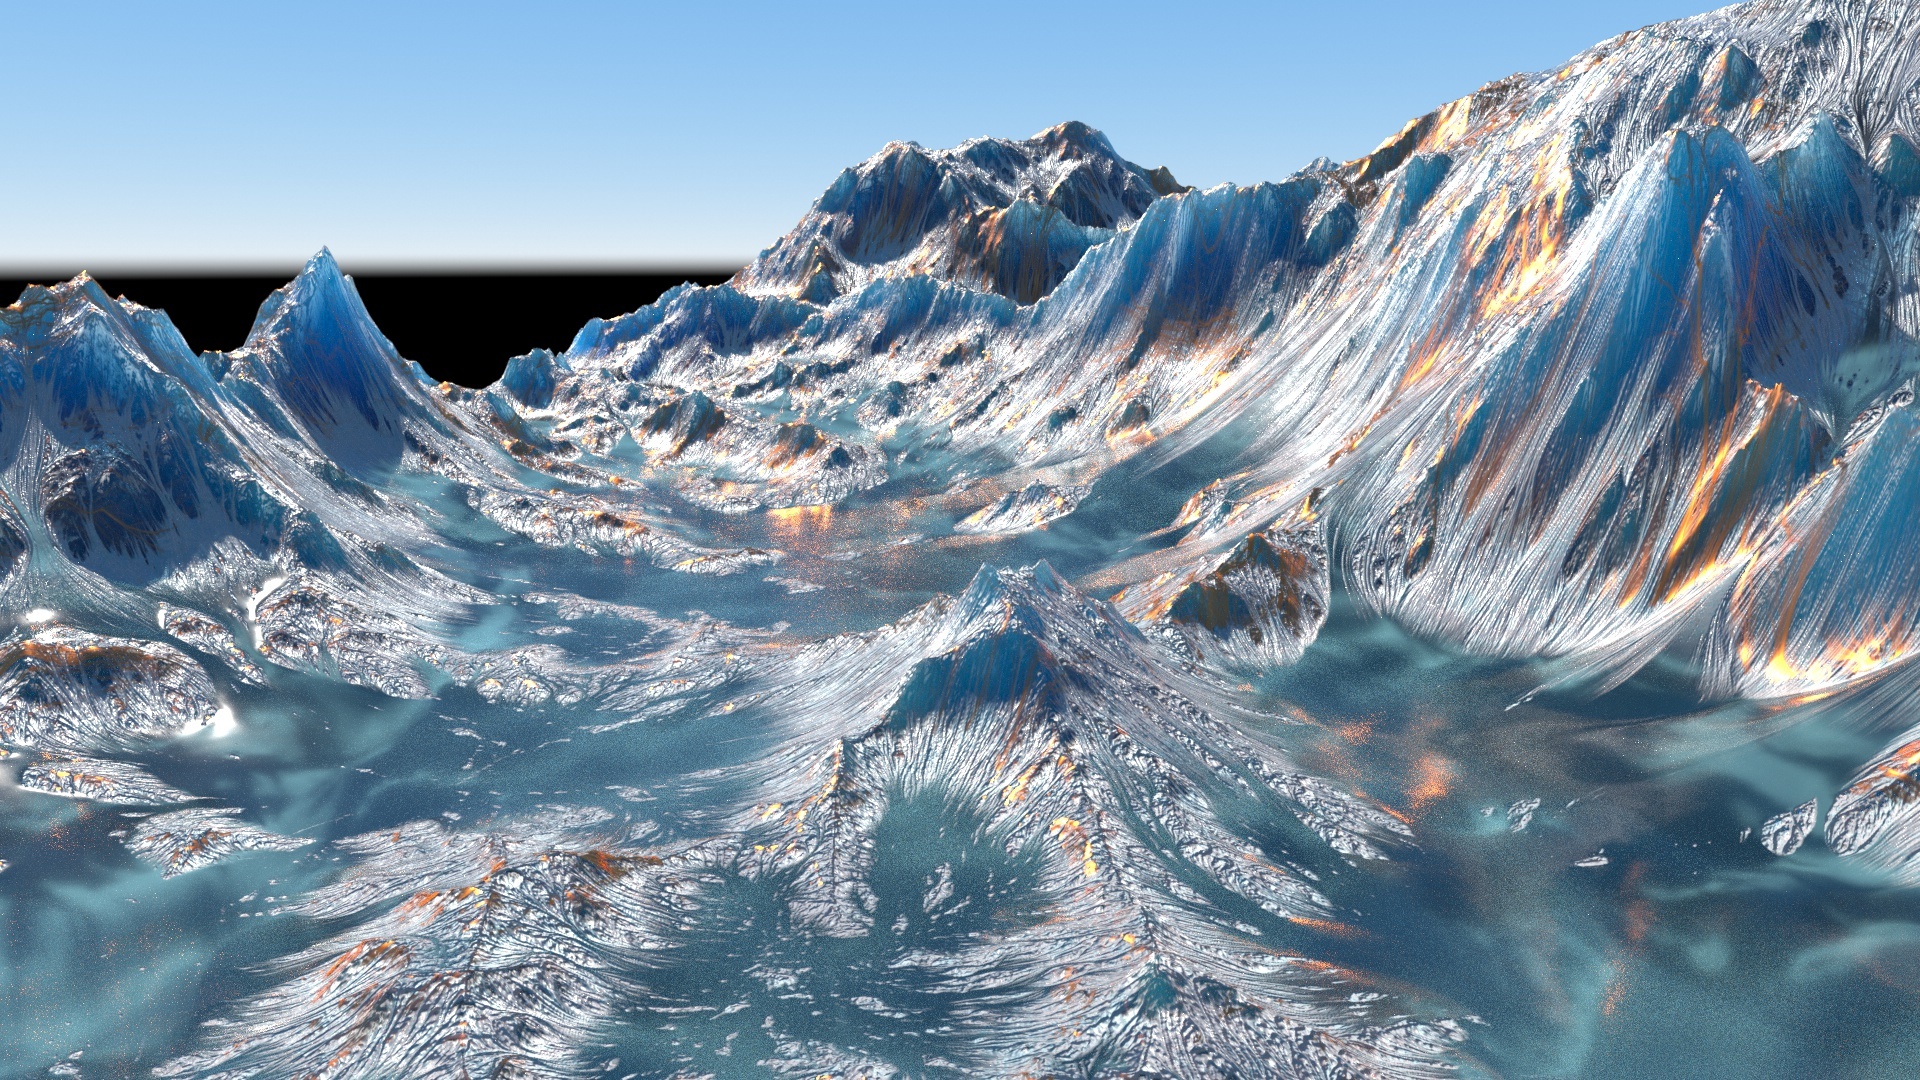 UE4虚幻4元素地下黑暗城堡宫殿冰山冰川熔岩巨魔巨兽关卡素材场景-淘宝网